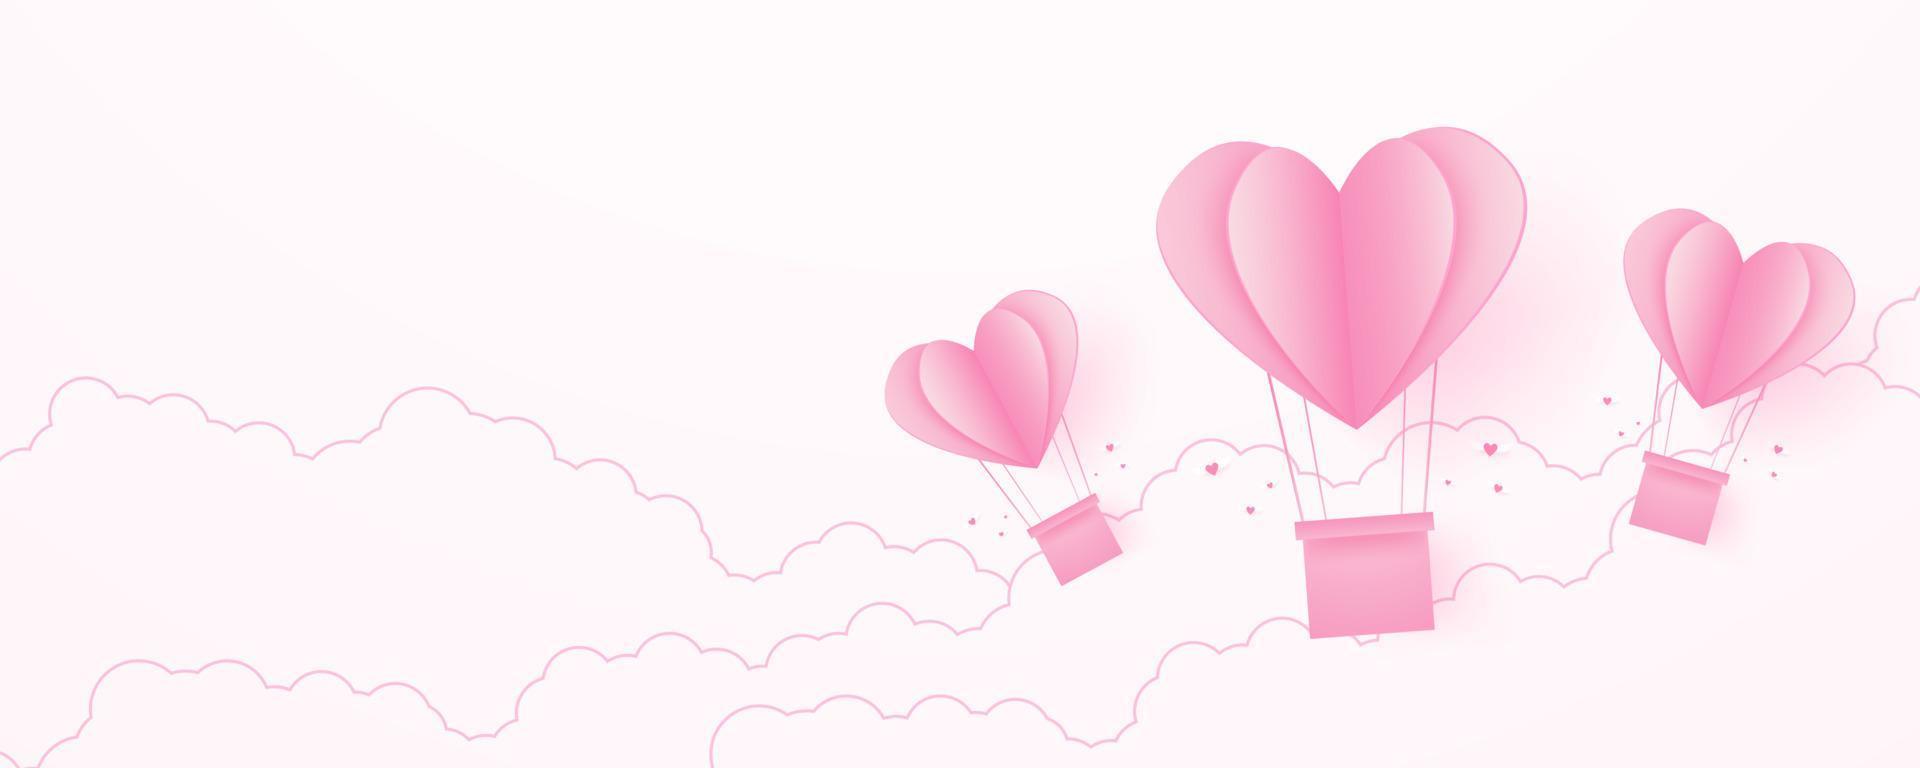 dia dos namorados, fundo de conceito de amor, balões de ar quente em forma de coração rosa de papel flutuando no céu com nuvens, espaço em branco, estilo de arte em papel vetor